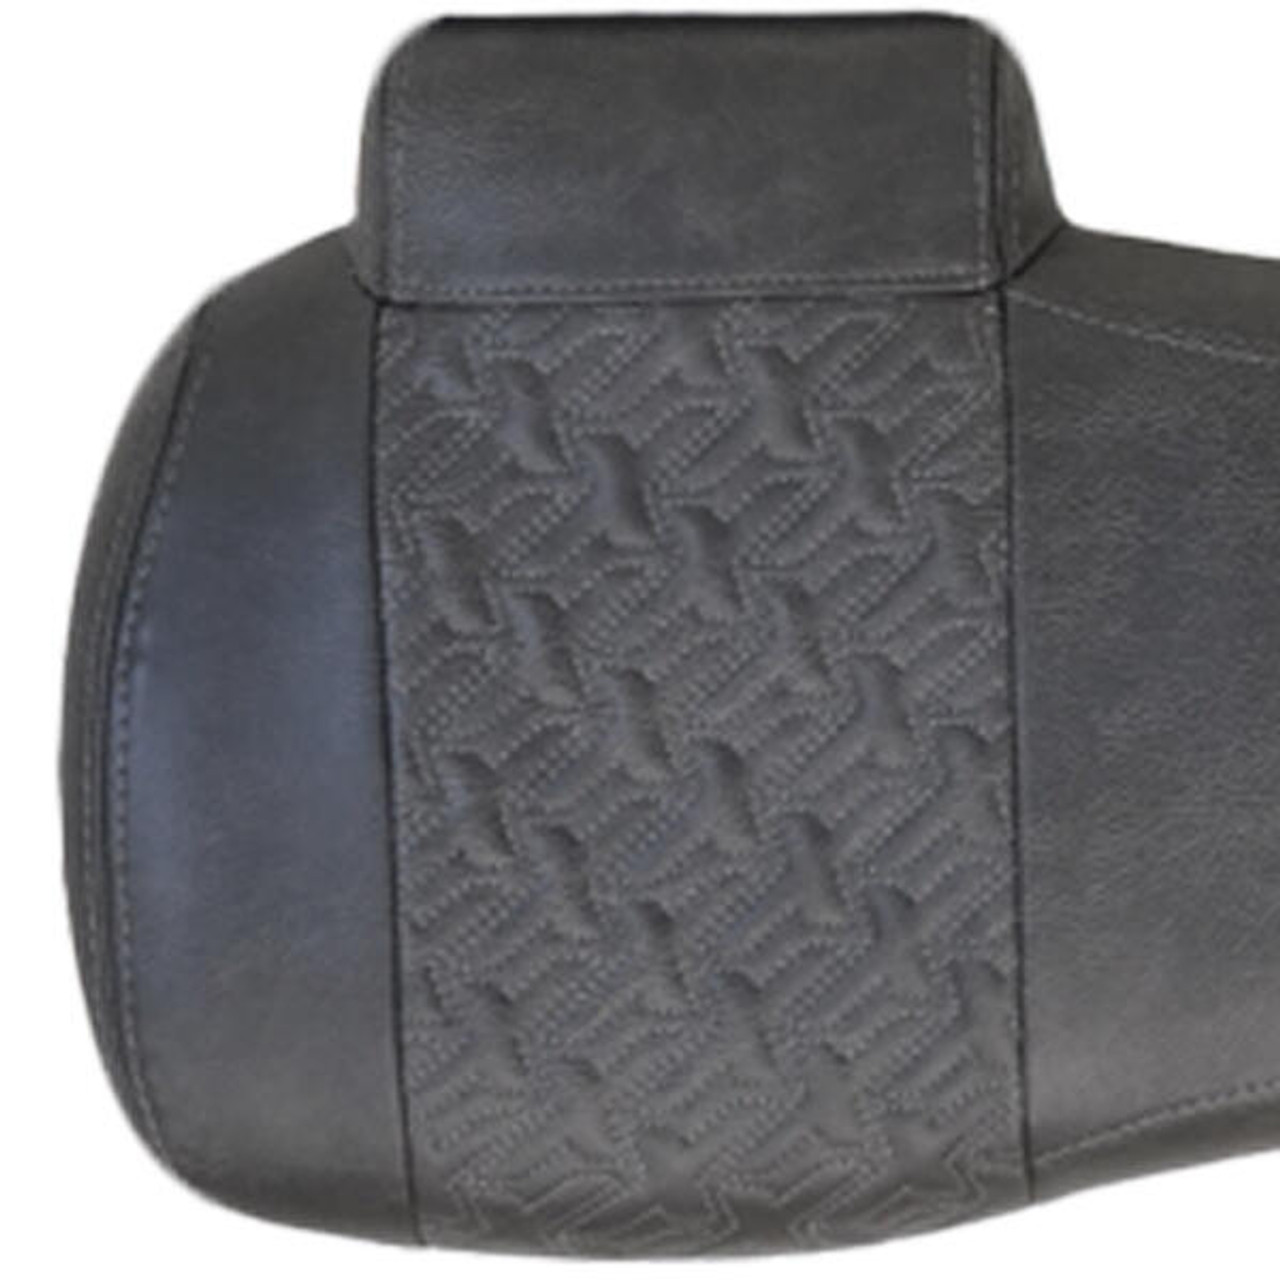 MadJax Executive Golf Cart Charcoal Seats for EZGO RXV / TXT, 10-416P